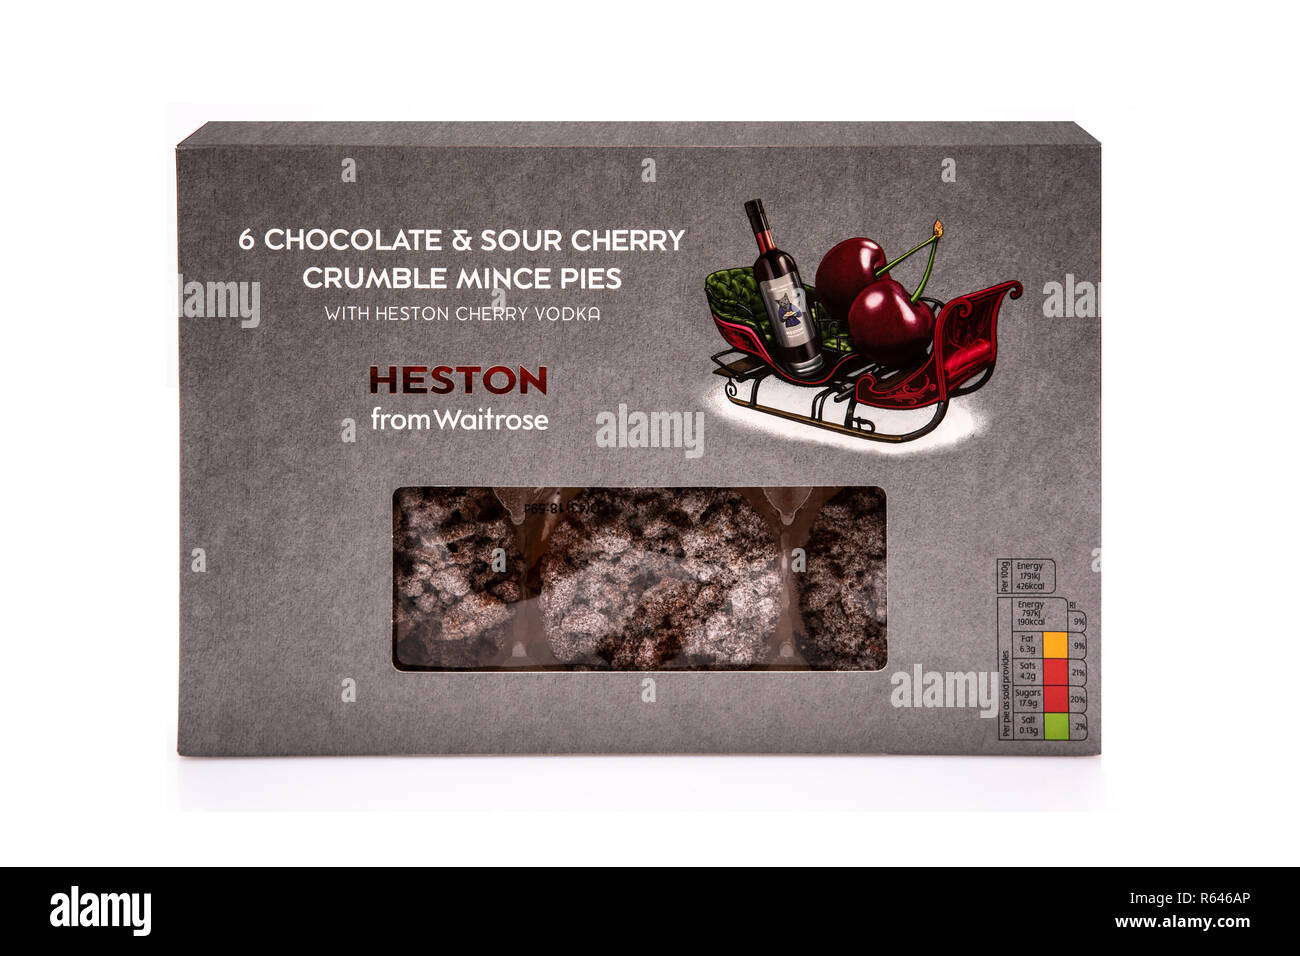 SWINDON, UK - Dezember 2, 2018: Heston von waitrose 6 Schokolade und Sauerkirsche bröckeln Mince Pies mit Heston Kirsche Wodka auf weißem Hintergrund Stockfoto